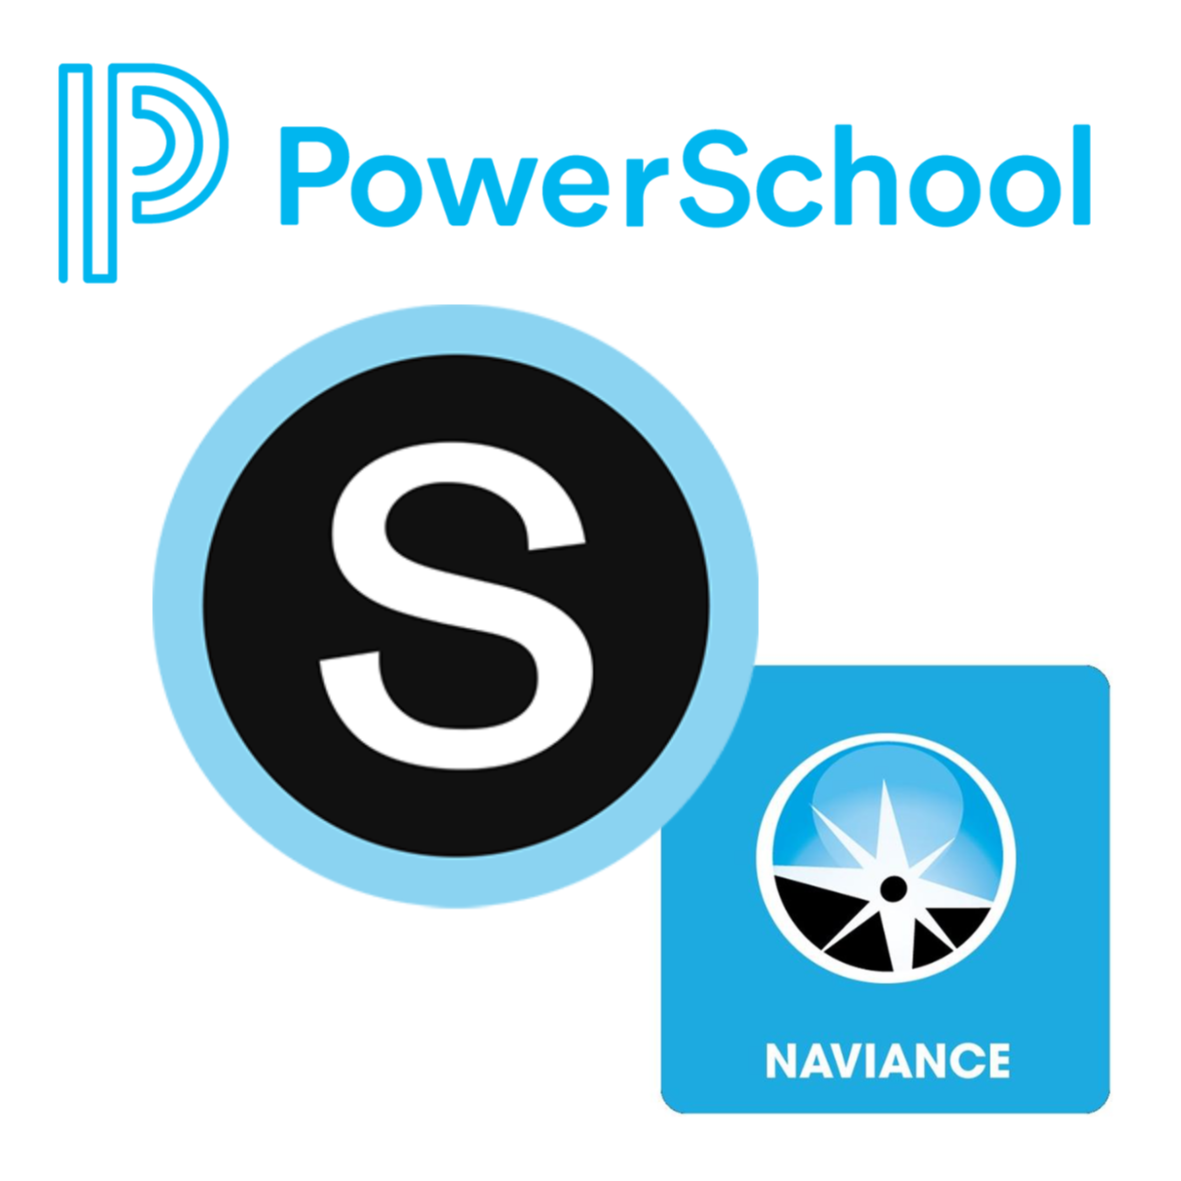 PowerSchool Schoology Naviance Logo